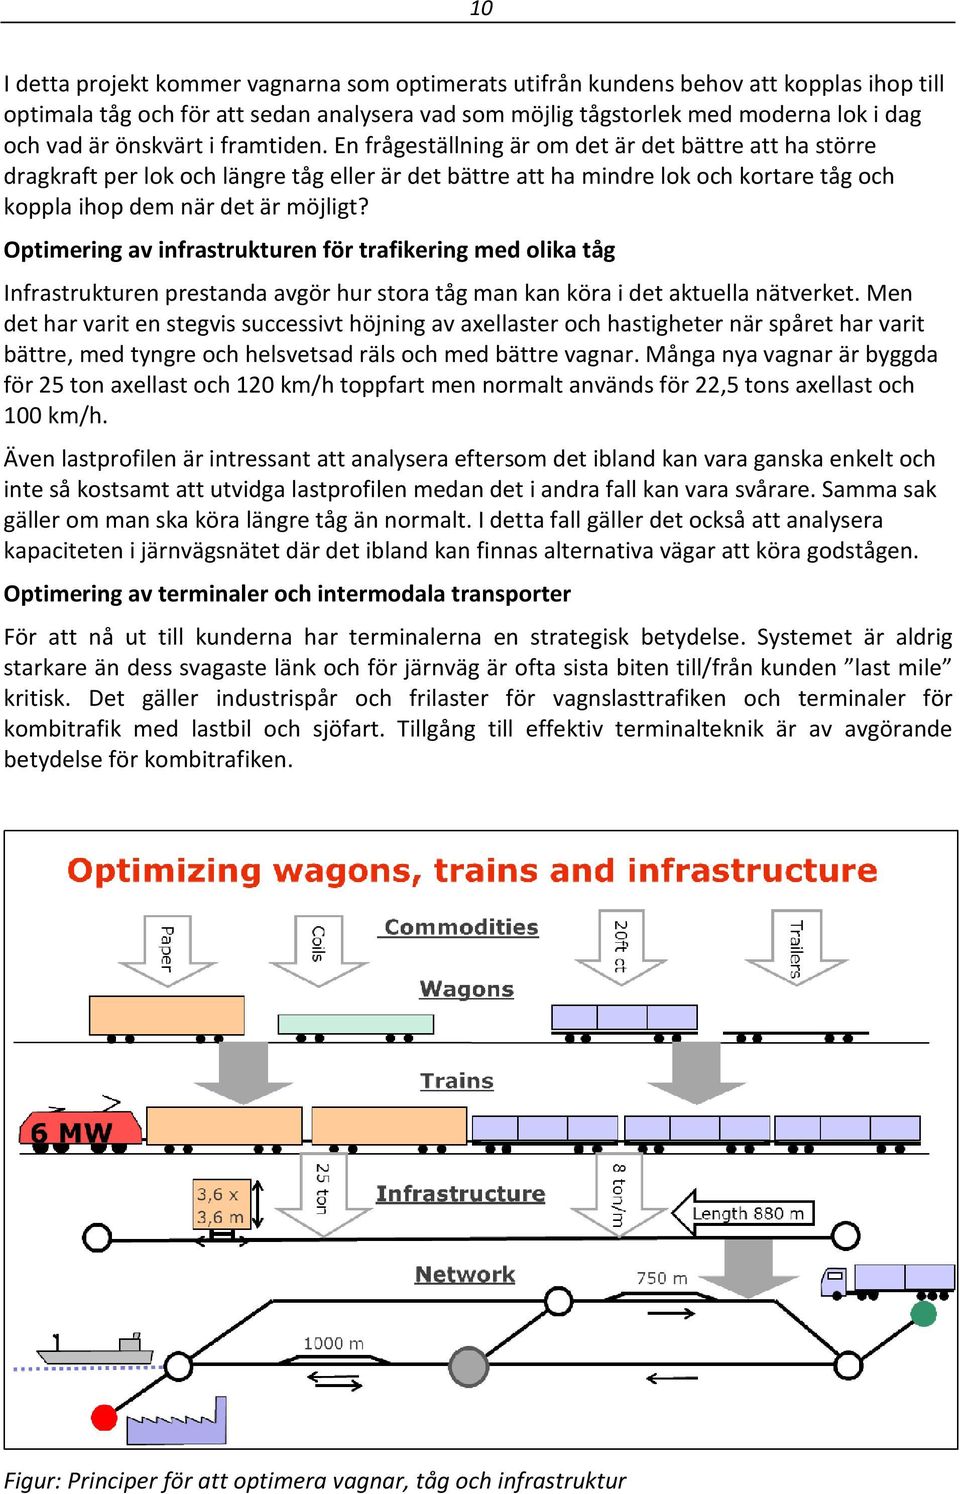 En frågeställning är om det är det bättre att ha större dragkraft per lok och längre tåg eller är det bättre att ha mindre lok och kortare tåg och koppla ihop dem när det är möjligt?